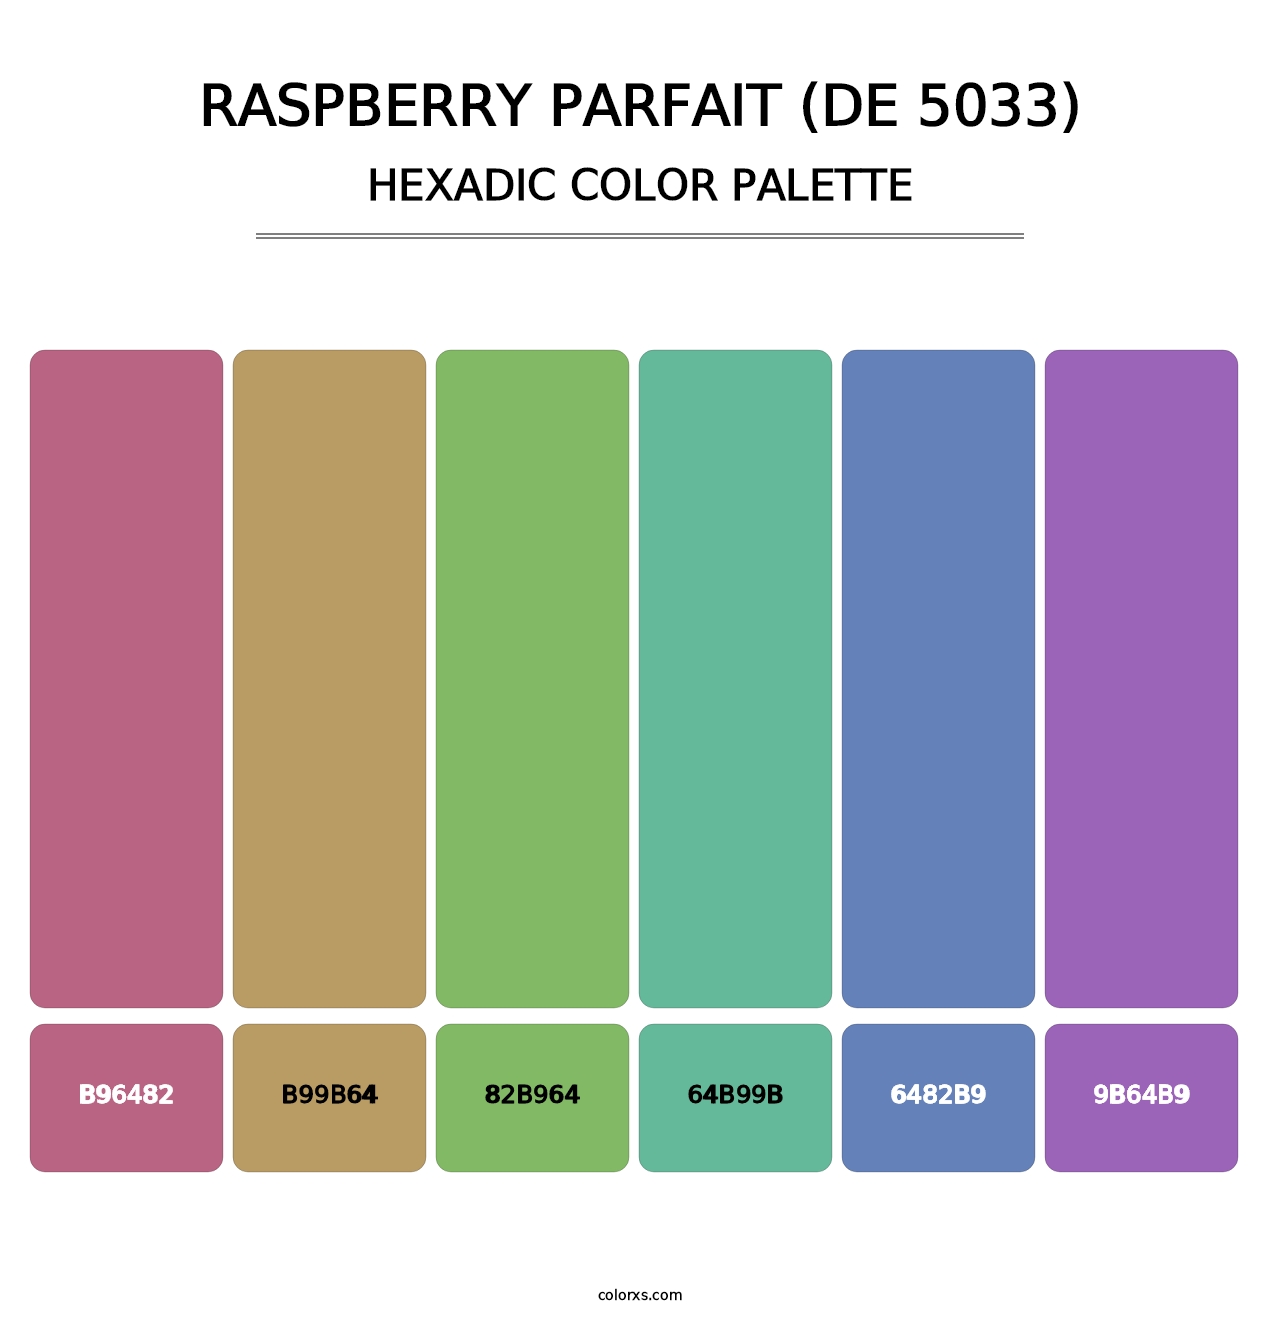 Raspberry Parfait (DE 5033) - Hexadic Color Palette